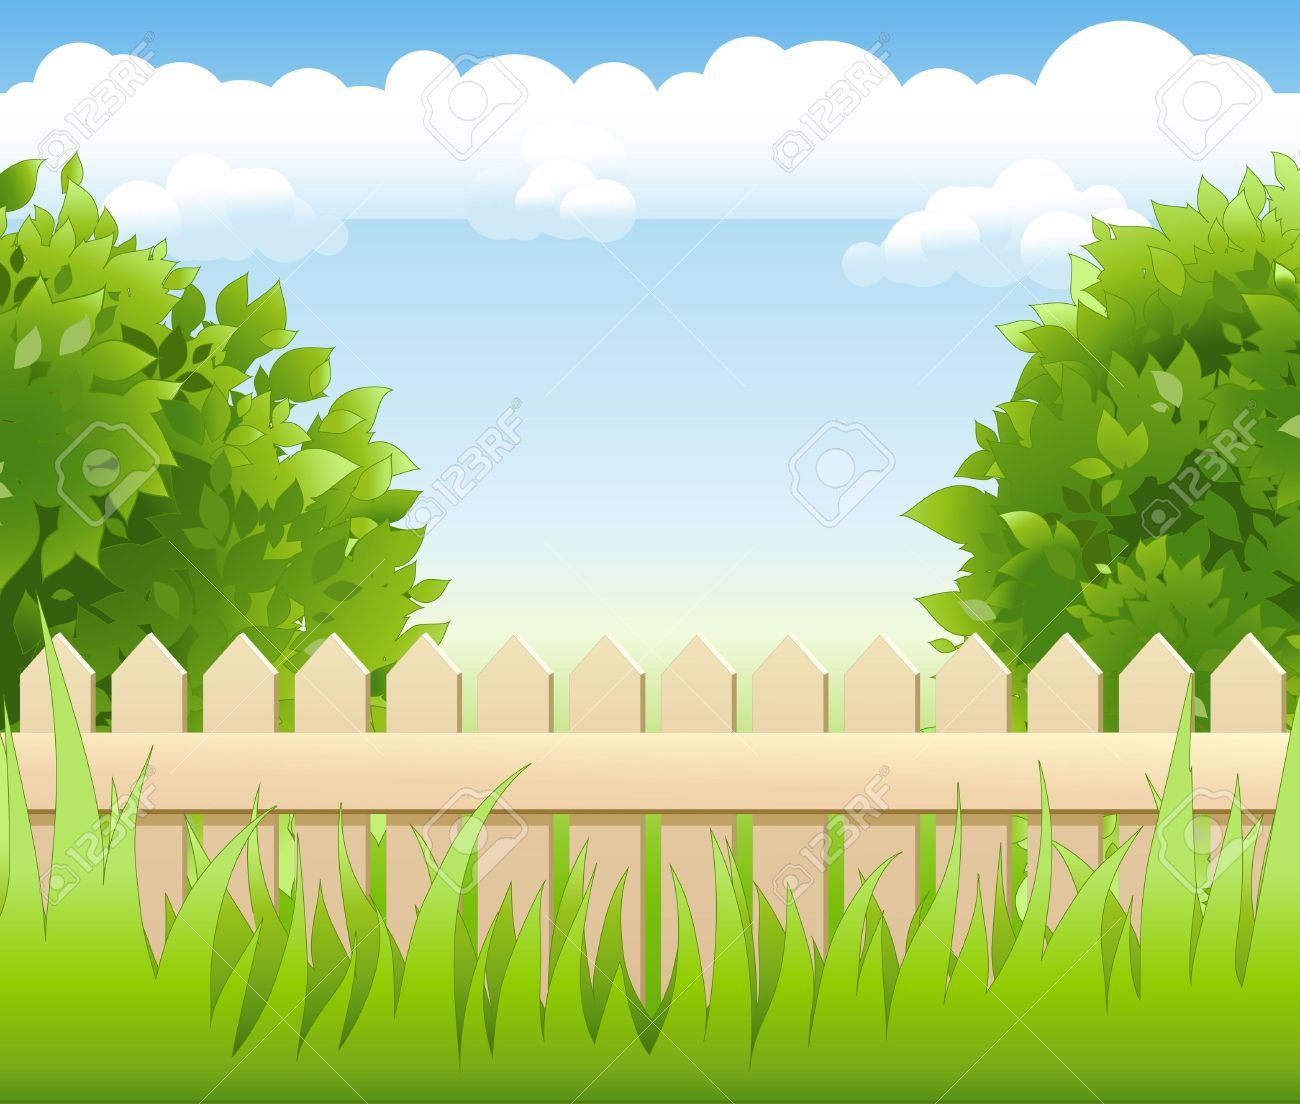 fence clipart garden landscape